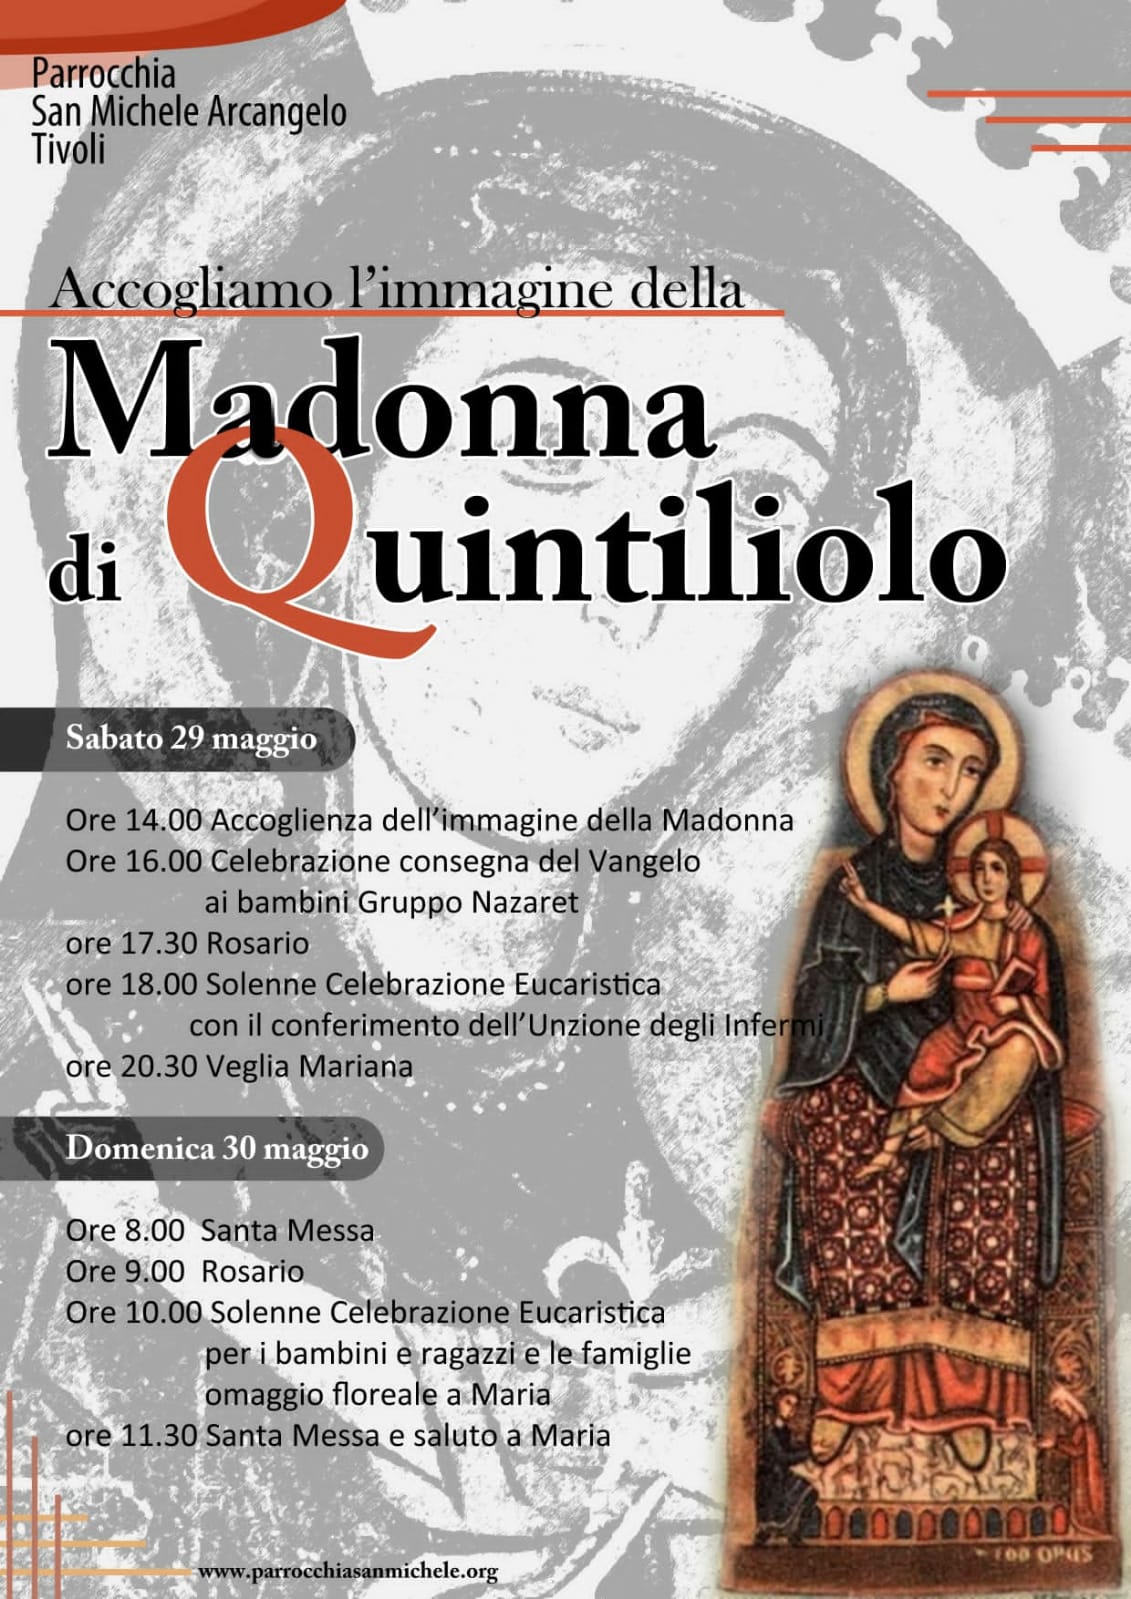 Accogliamo l’immagine della Madonna di Quintiliolo